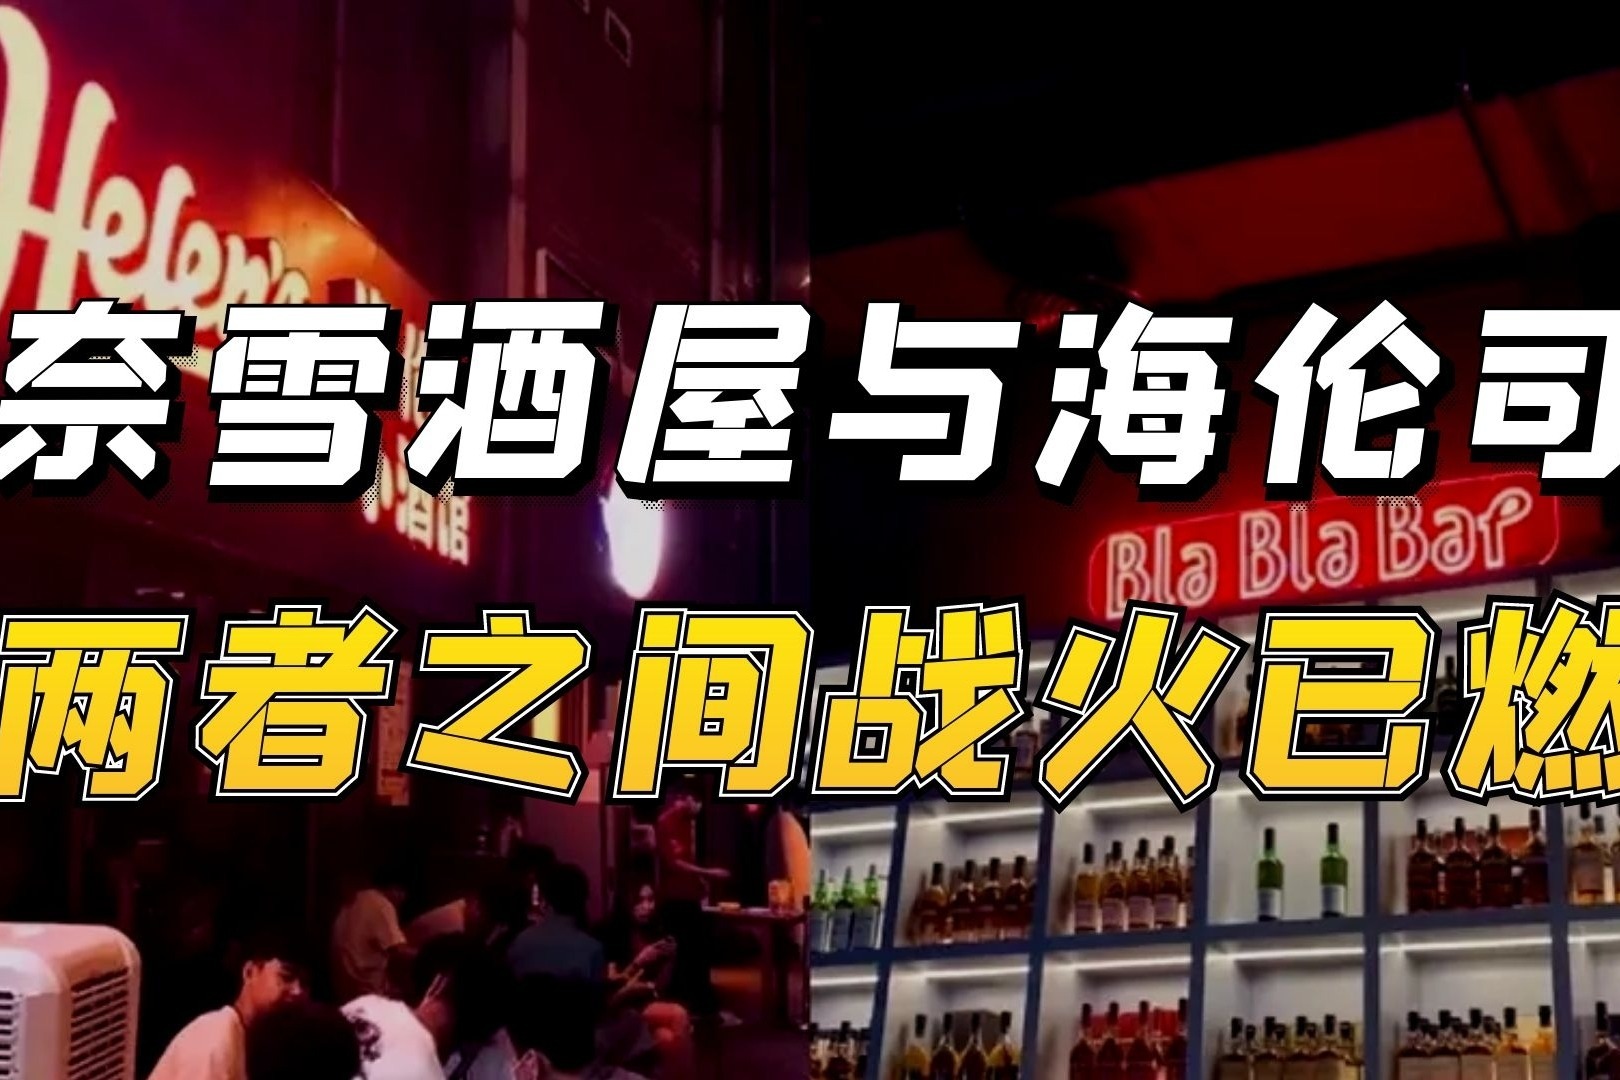 海伦司递交招股书 有望成为第一家国内上市酒吧_凤凰网视频_凤凰网